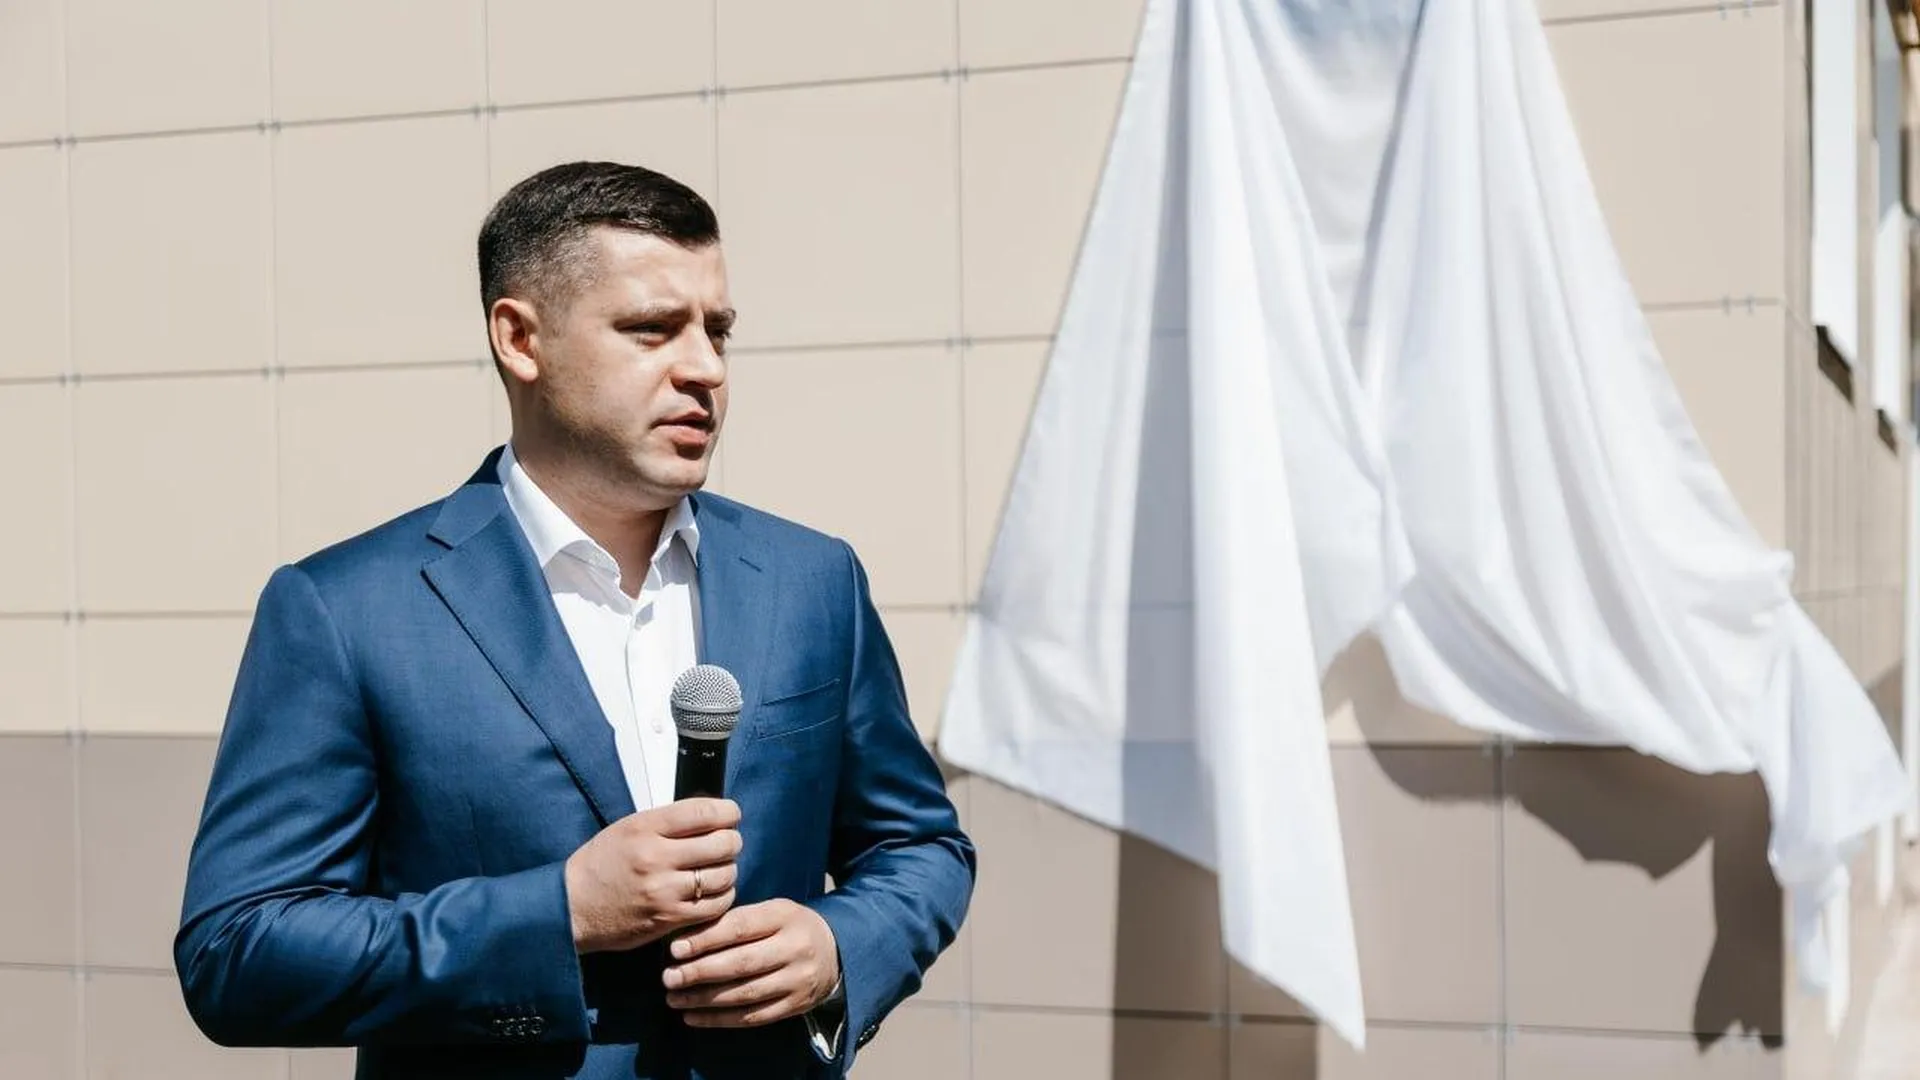 Глава городского округа Чехов открыл мемориальную доску в память о герое, погибшем в ходе СВО